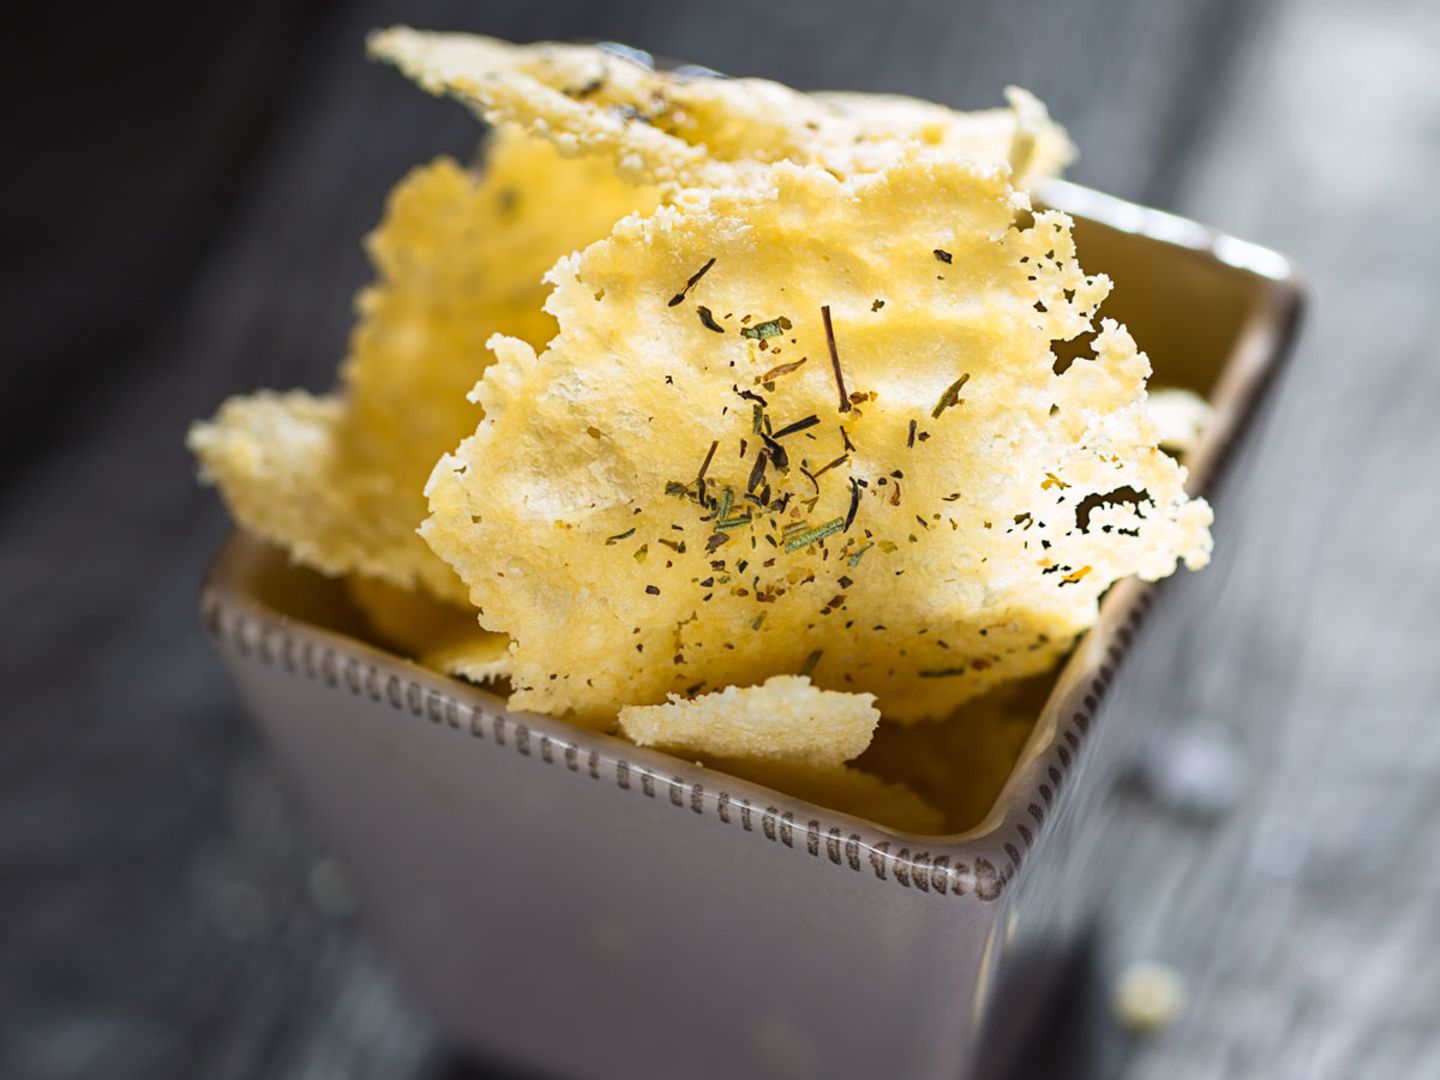 Käse-Chips in einer Schale